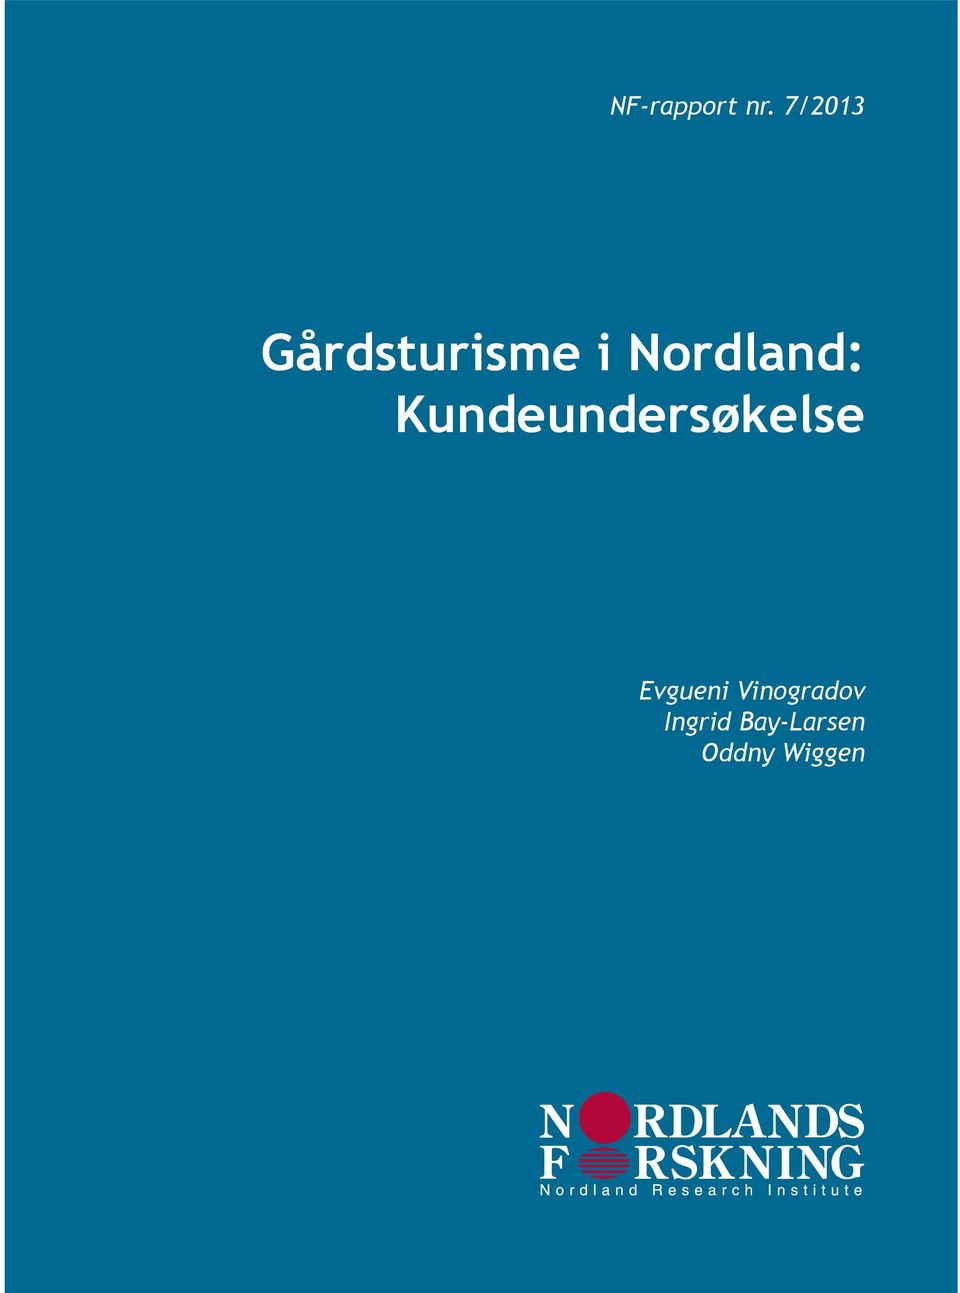 Nordland: Kundeundersøkelse